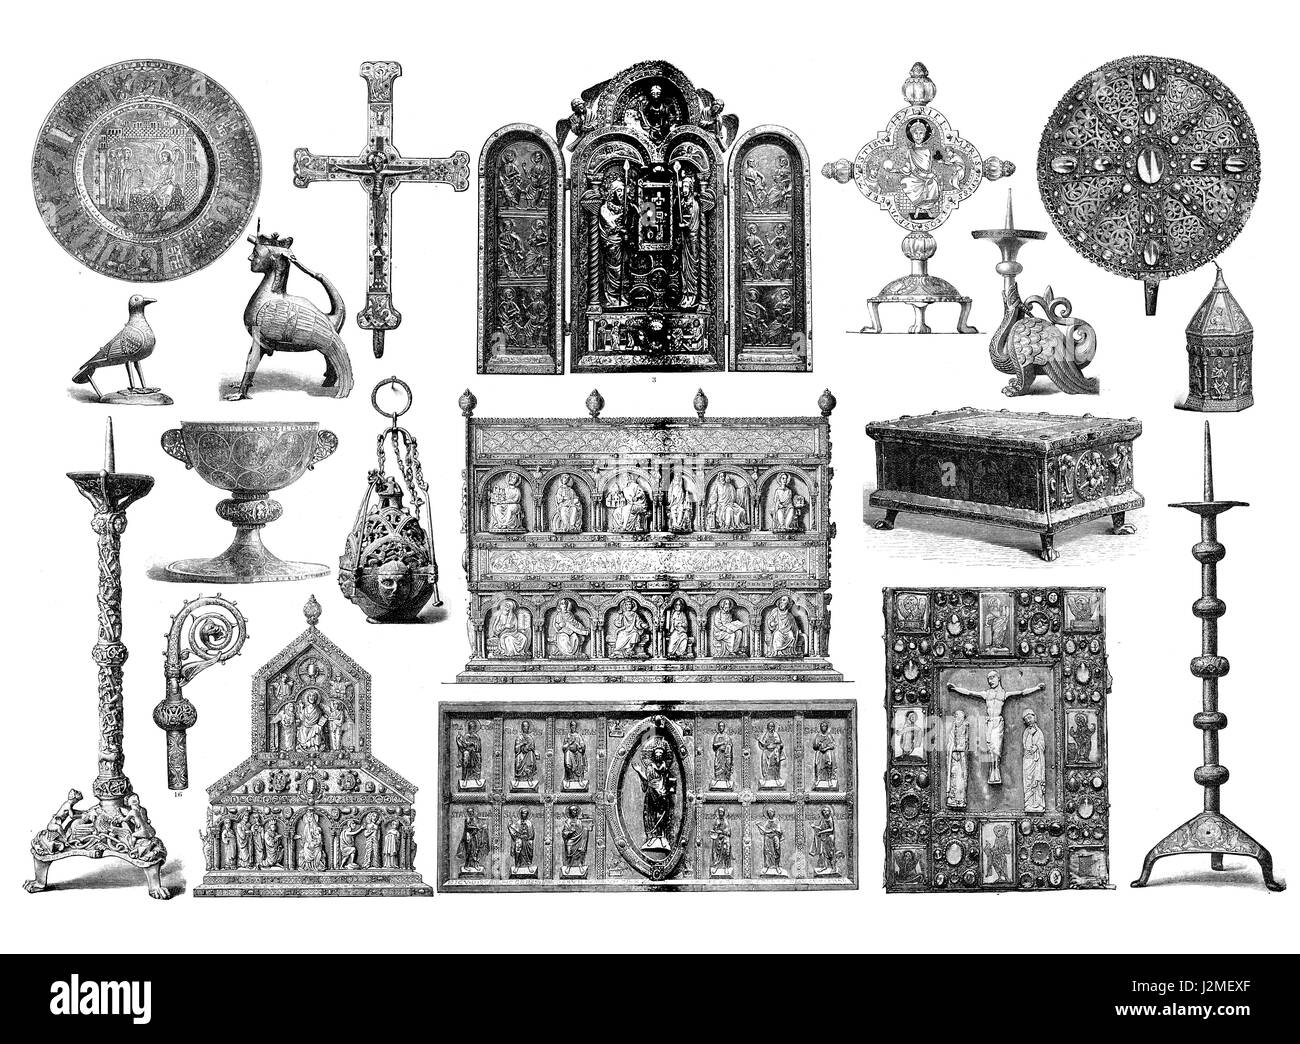 Liturgiche medievali e manufacts artistica, utilizzato per decorate chiese e altari con simboli religiosi, incisione Foto Stock